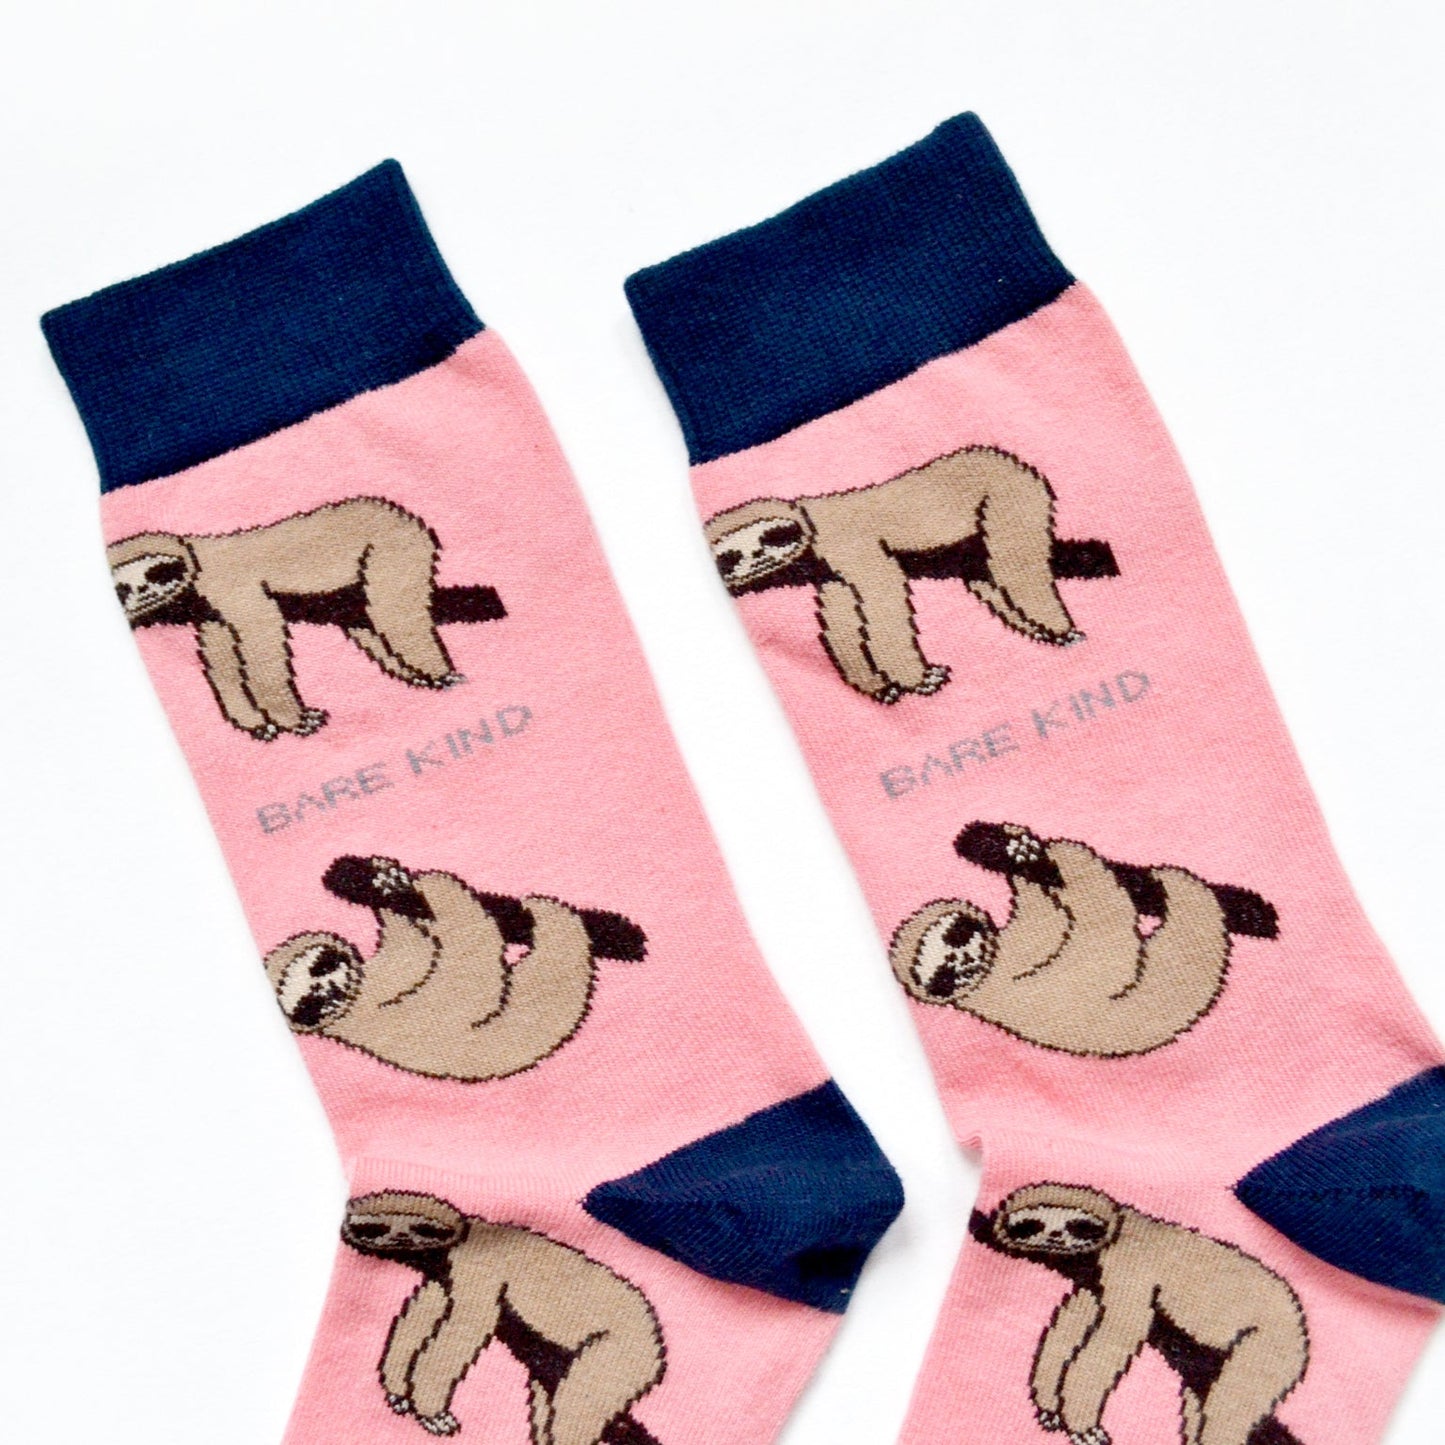 Bare Kind Bamboo Socks - Save the Sloth